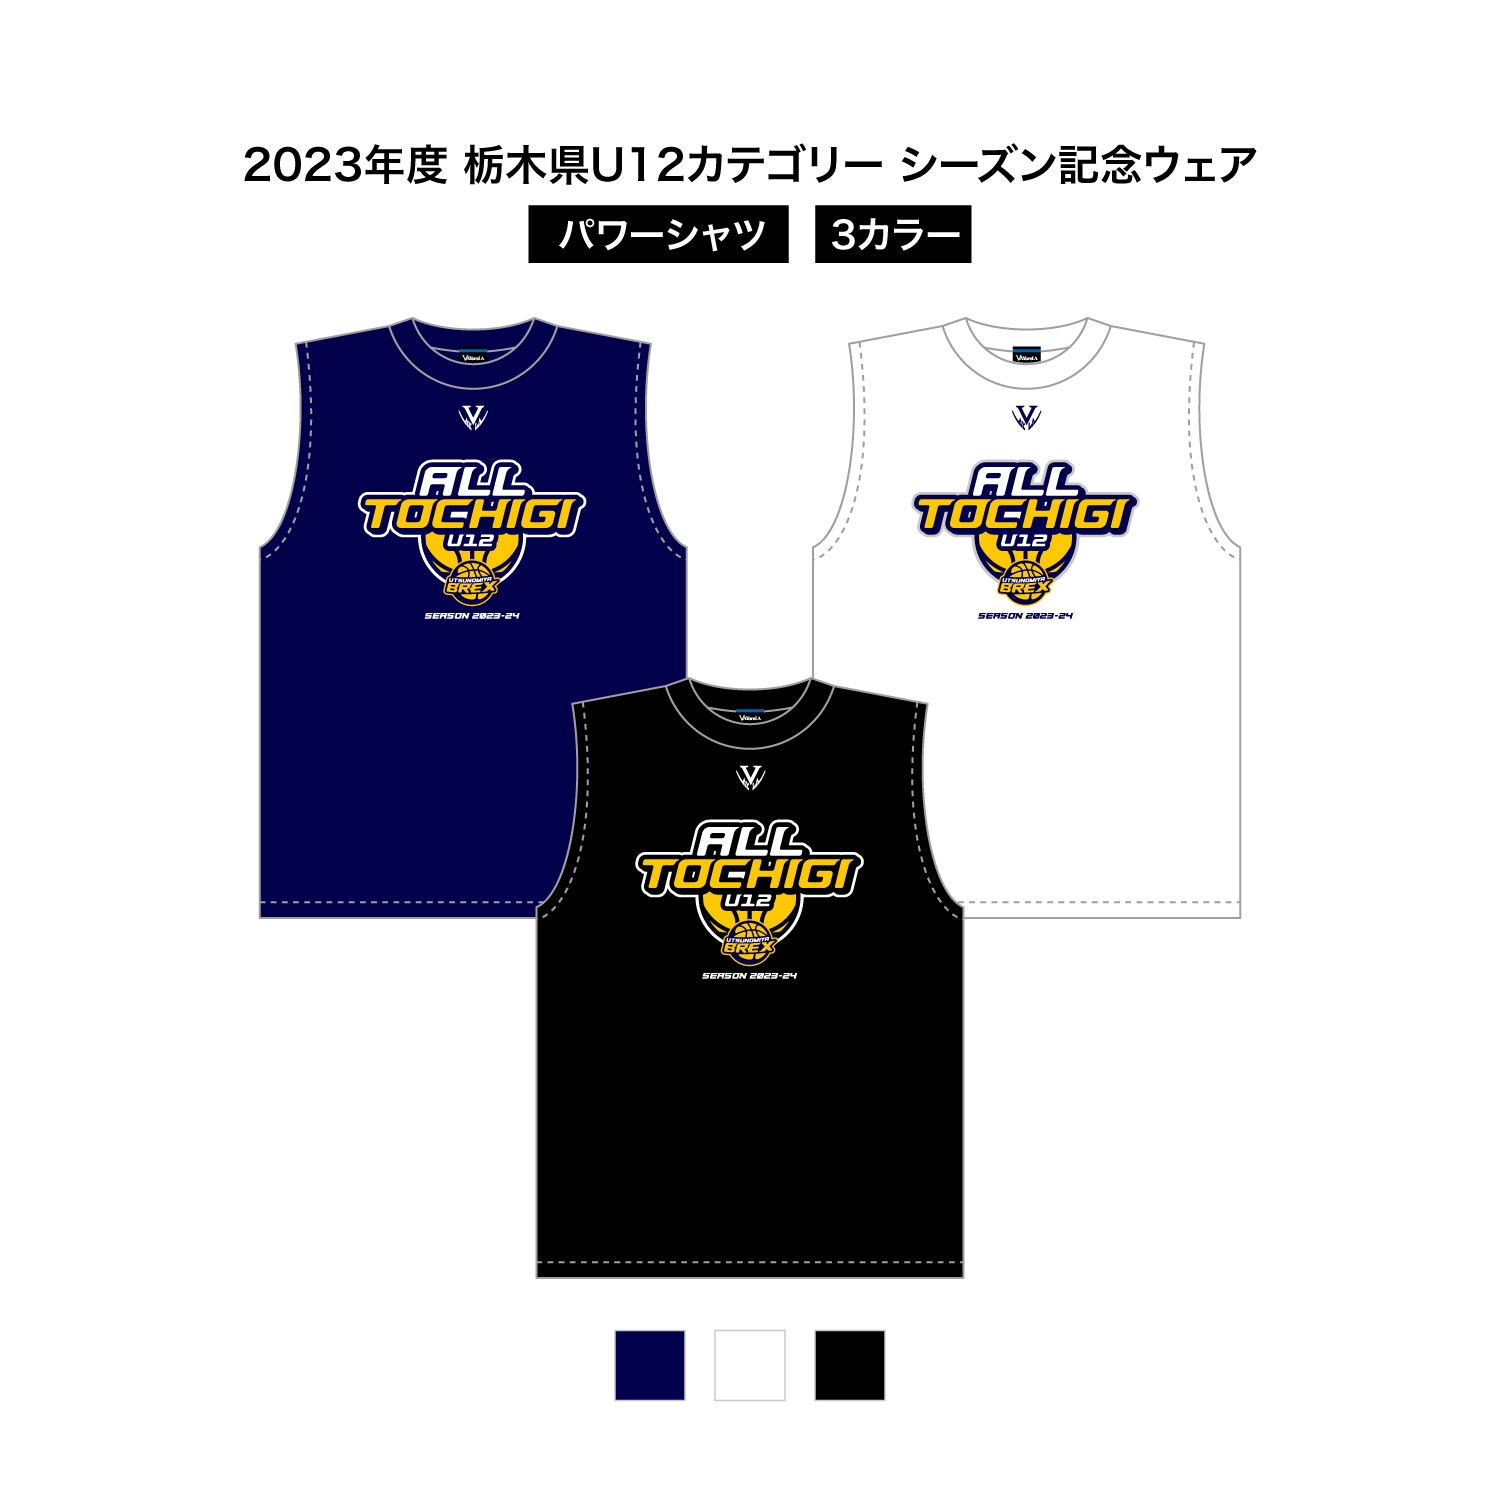 2023 栃木県U12 シーズン記念ウェア ドライパワーシャツ